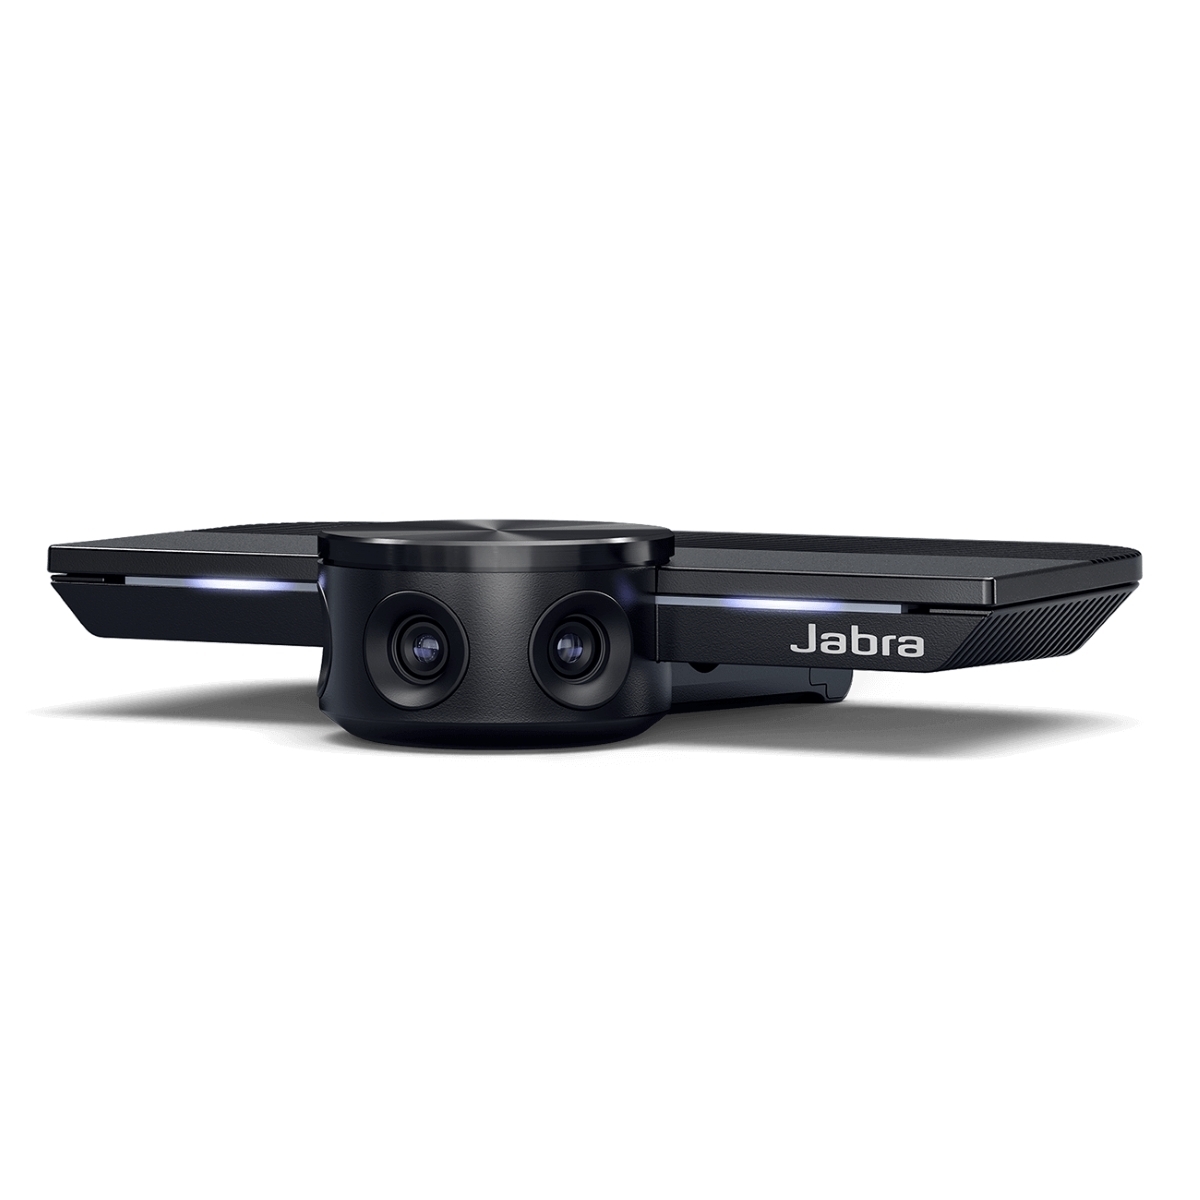 Jabra PanaCast Konferenzkamera Webcam - intelligente Videokamera mit 4K Auflösung und 180 Grad Sichtfeld